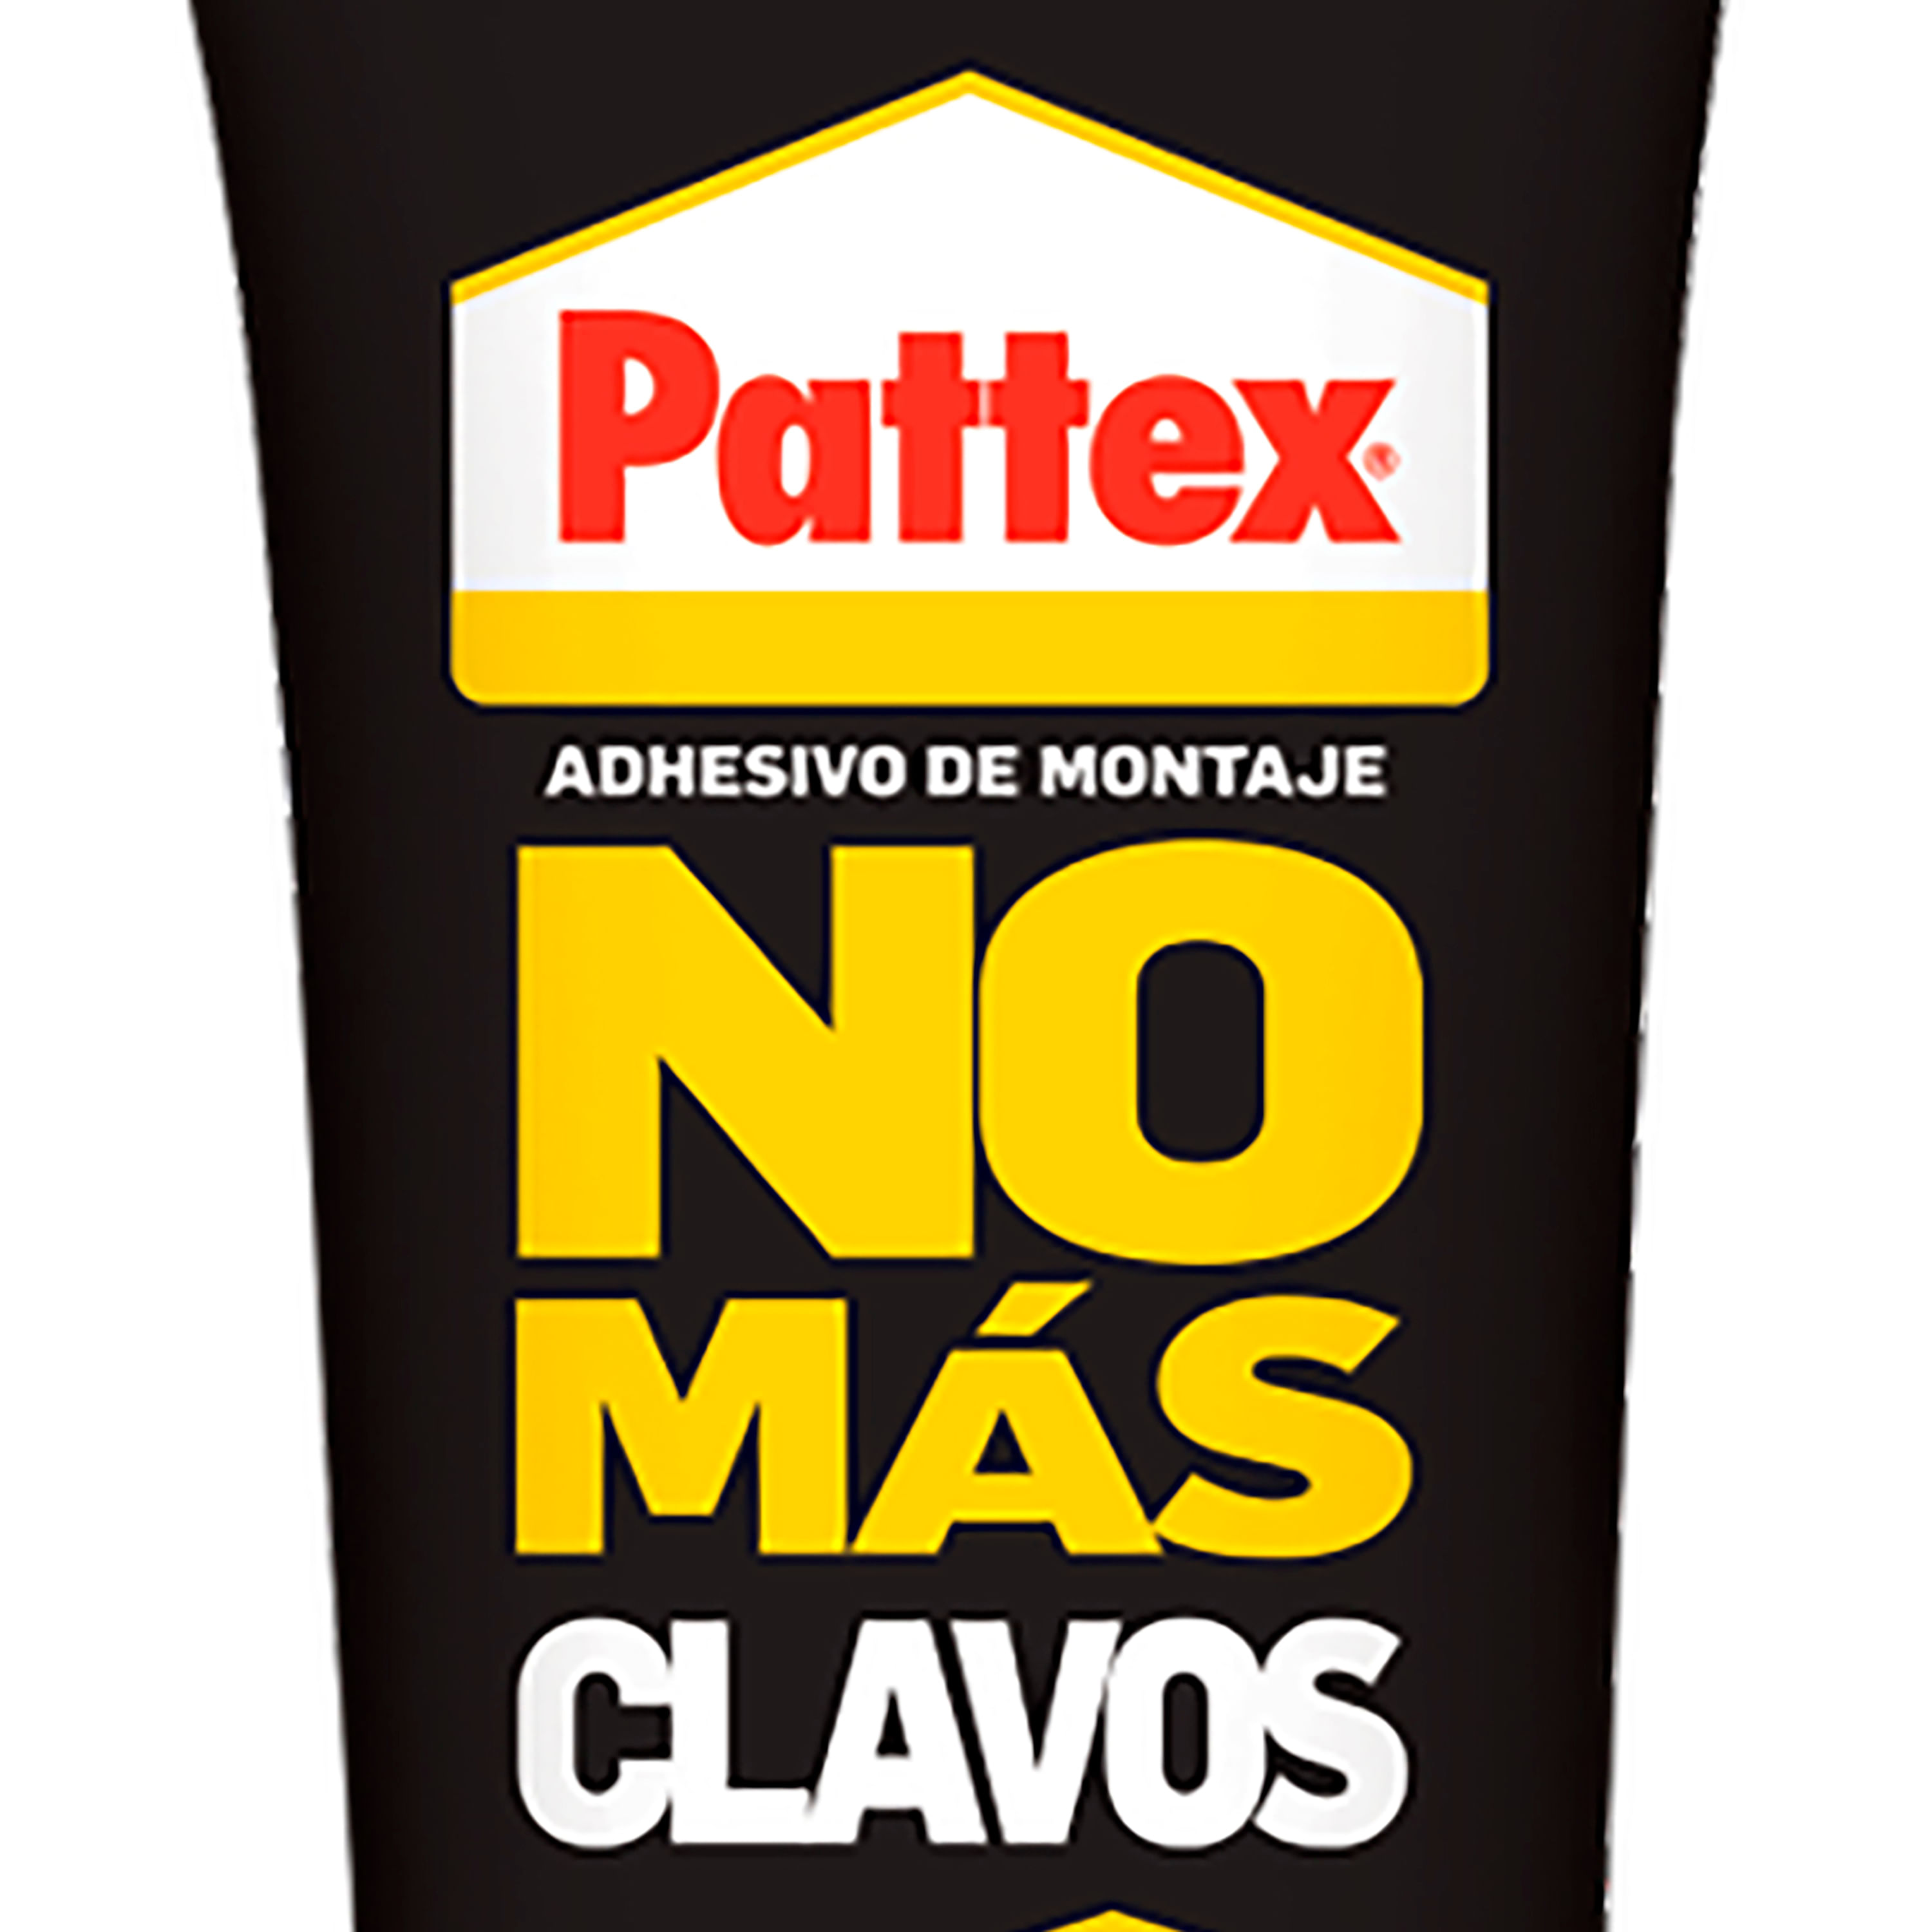 PATTEX No Más Clavos 120g